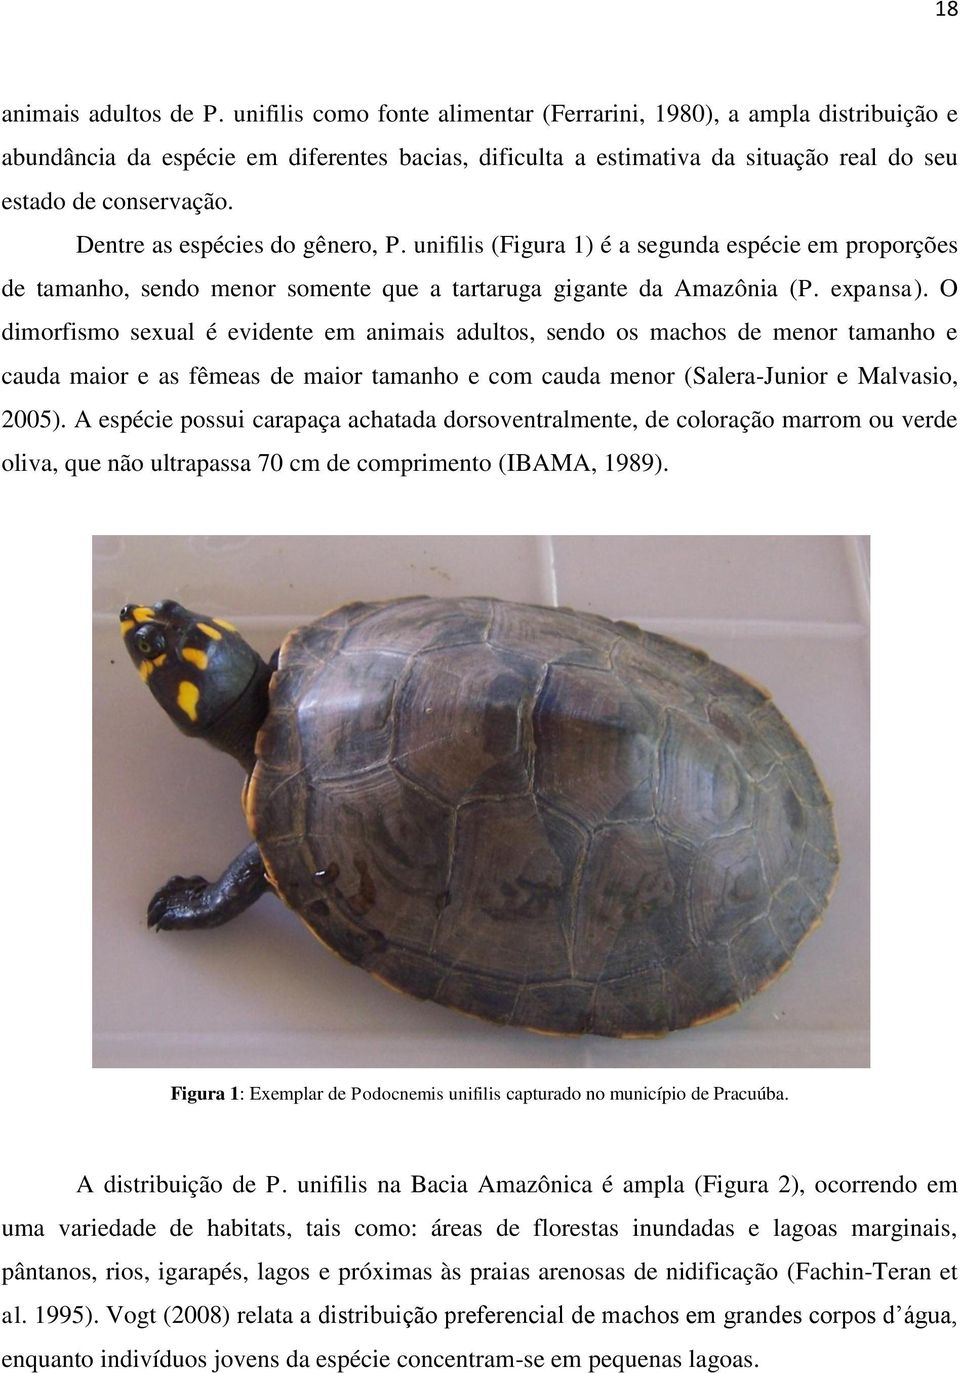 Dentre as espécies do gênero, P. unifilis (Figura 1) é a segunda espécie em proporções de tamanho, sendo menor somente que a tartaruga gigante da Amazônia (P. expansa).